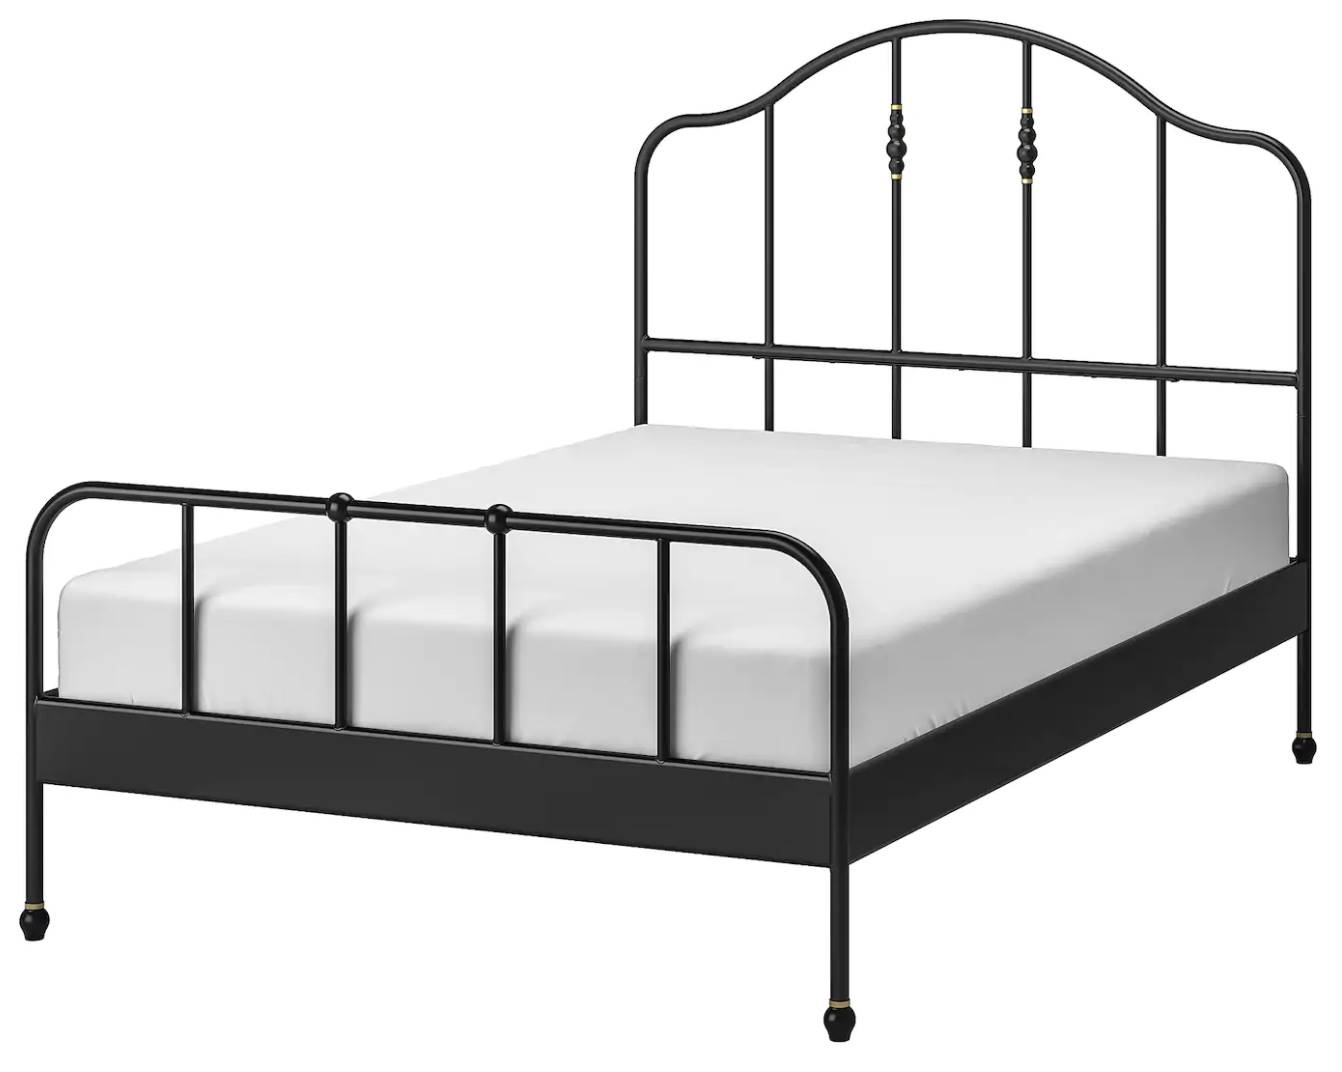 Estructura de cama SAGSTUA de forja negra de IKEA